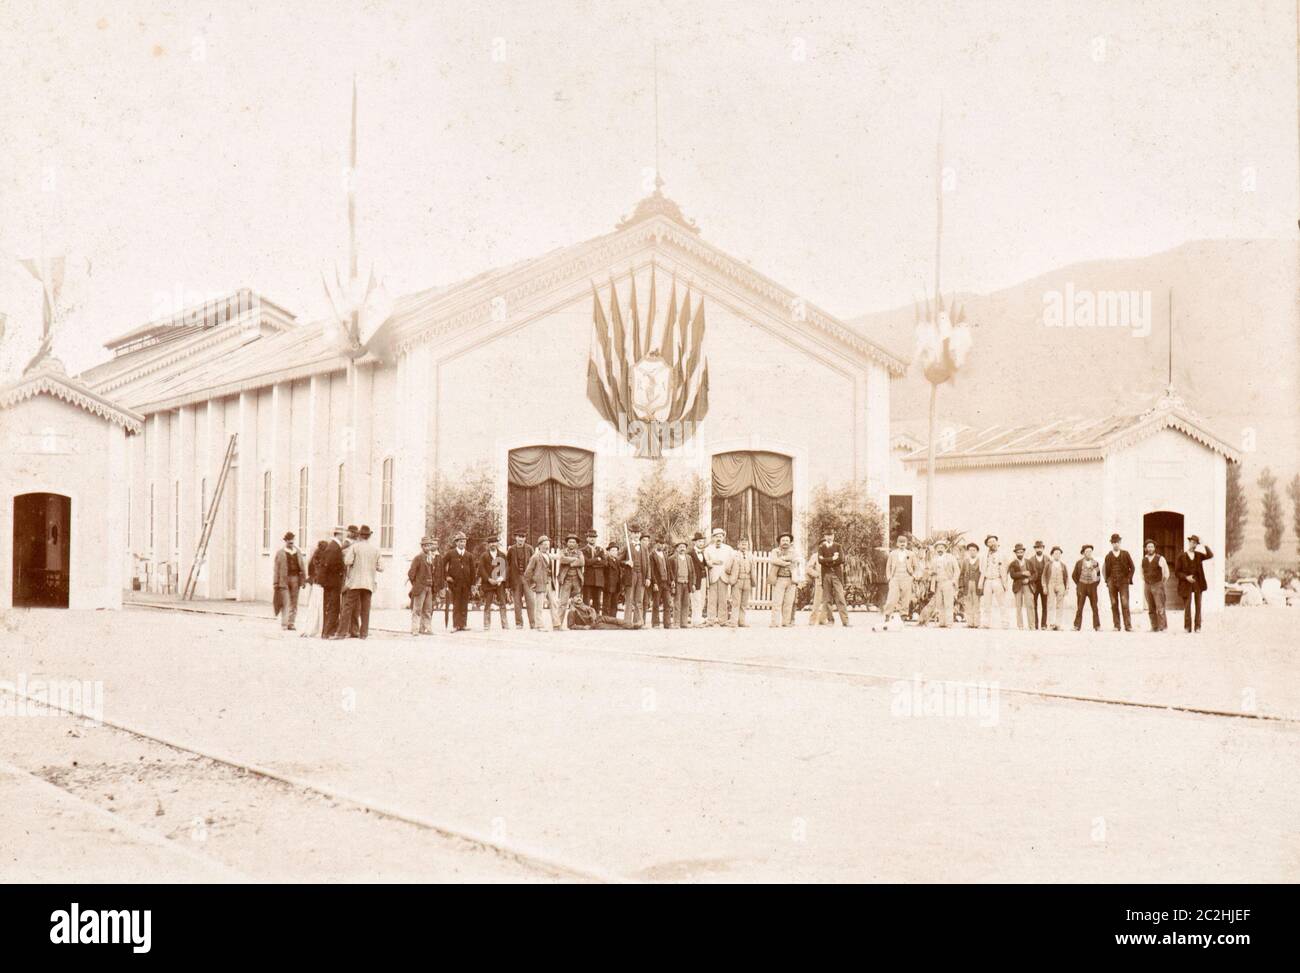 La gare de Castel di Sangro, Aquila (Italie) au début des années 1900 Banque D'Images